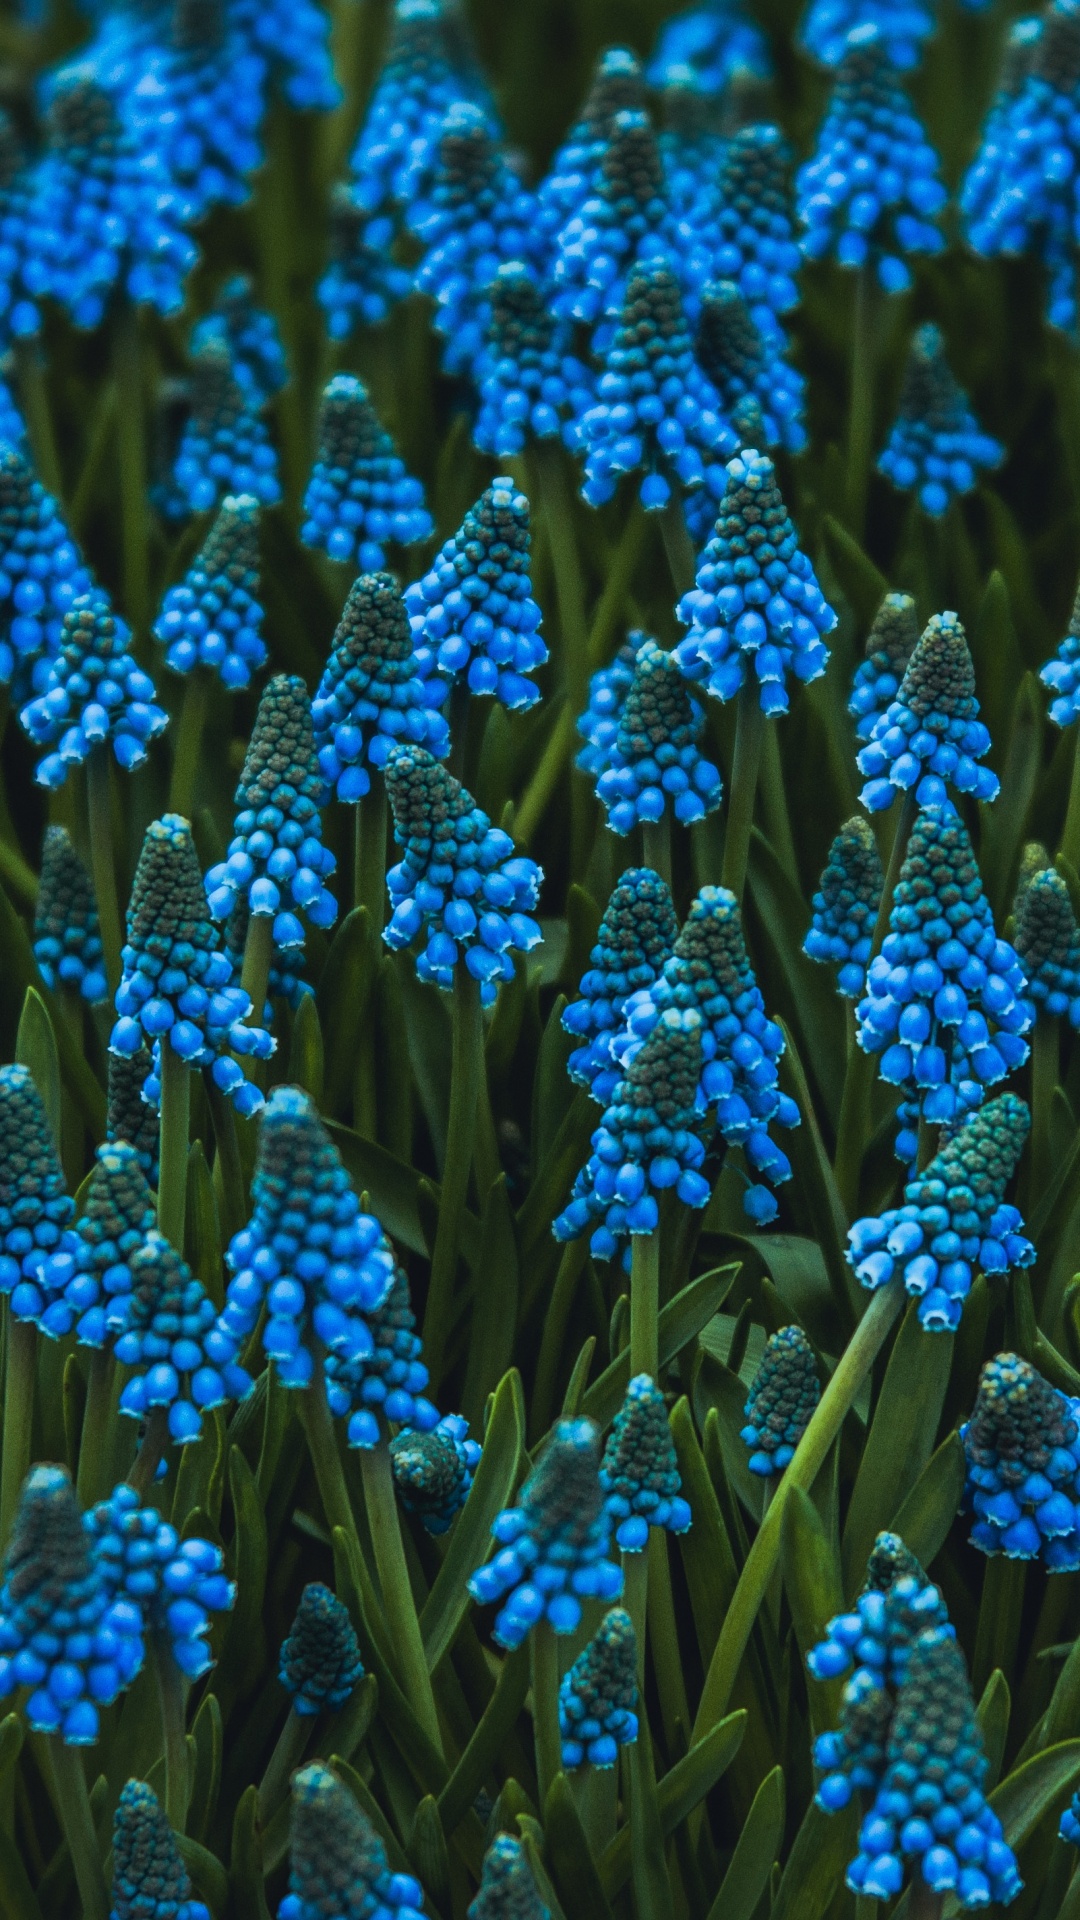 Blue Flowers in Tilt Shift Lens. Wallpaper in 1080x1920 Resolution